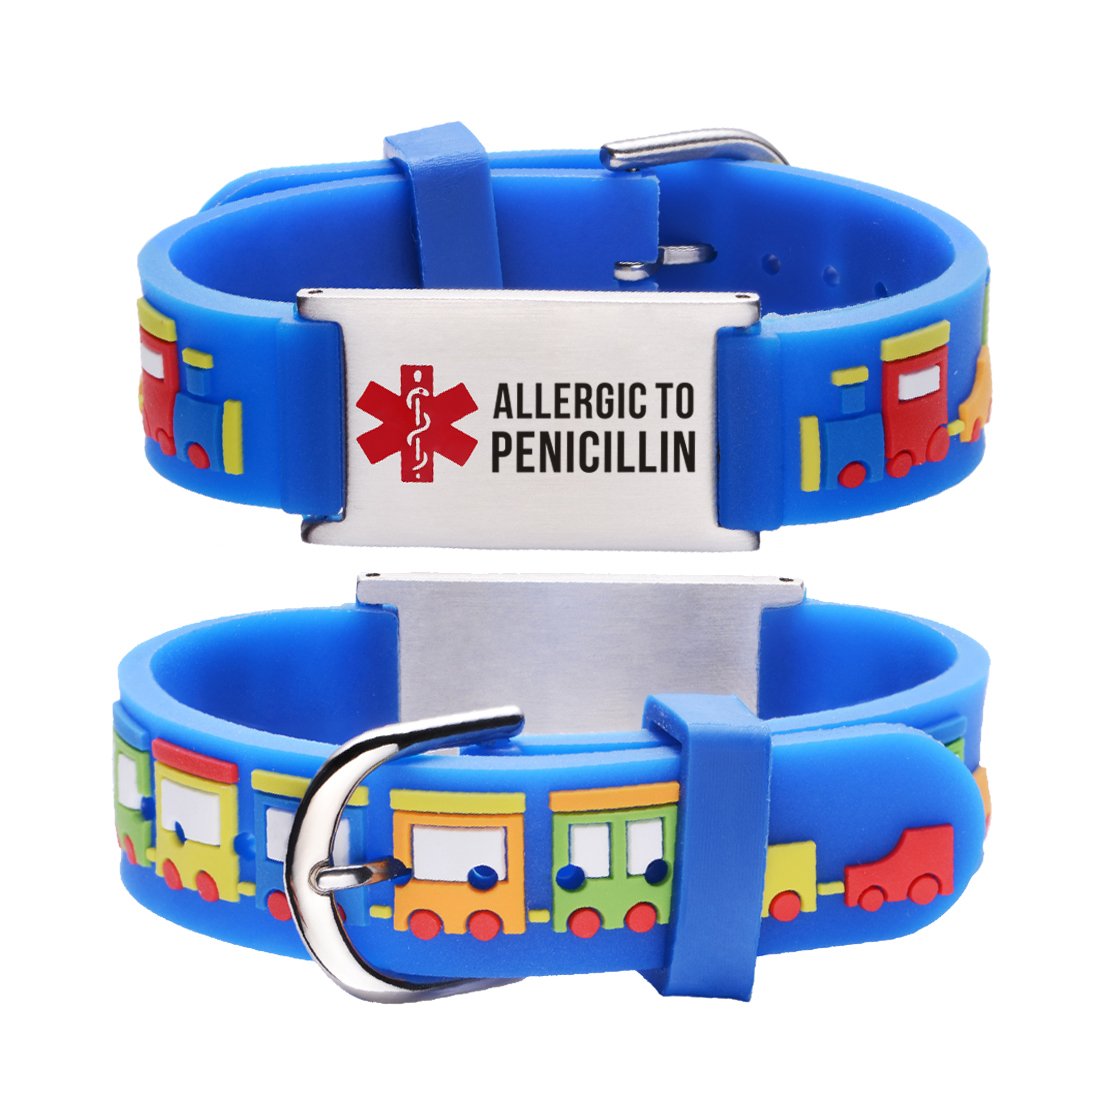 Allergic to Penicillin Alert Bracelet for kids-Small train